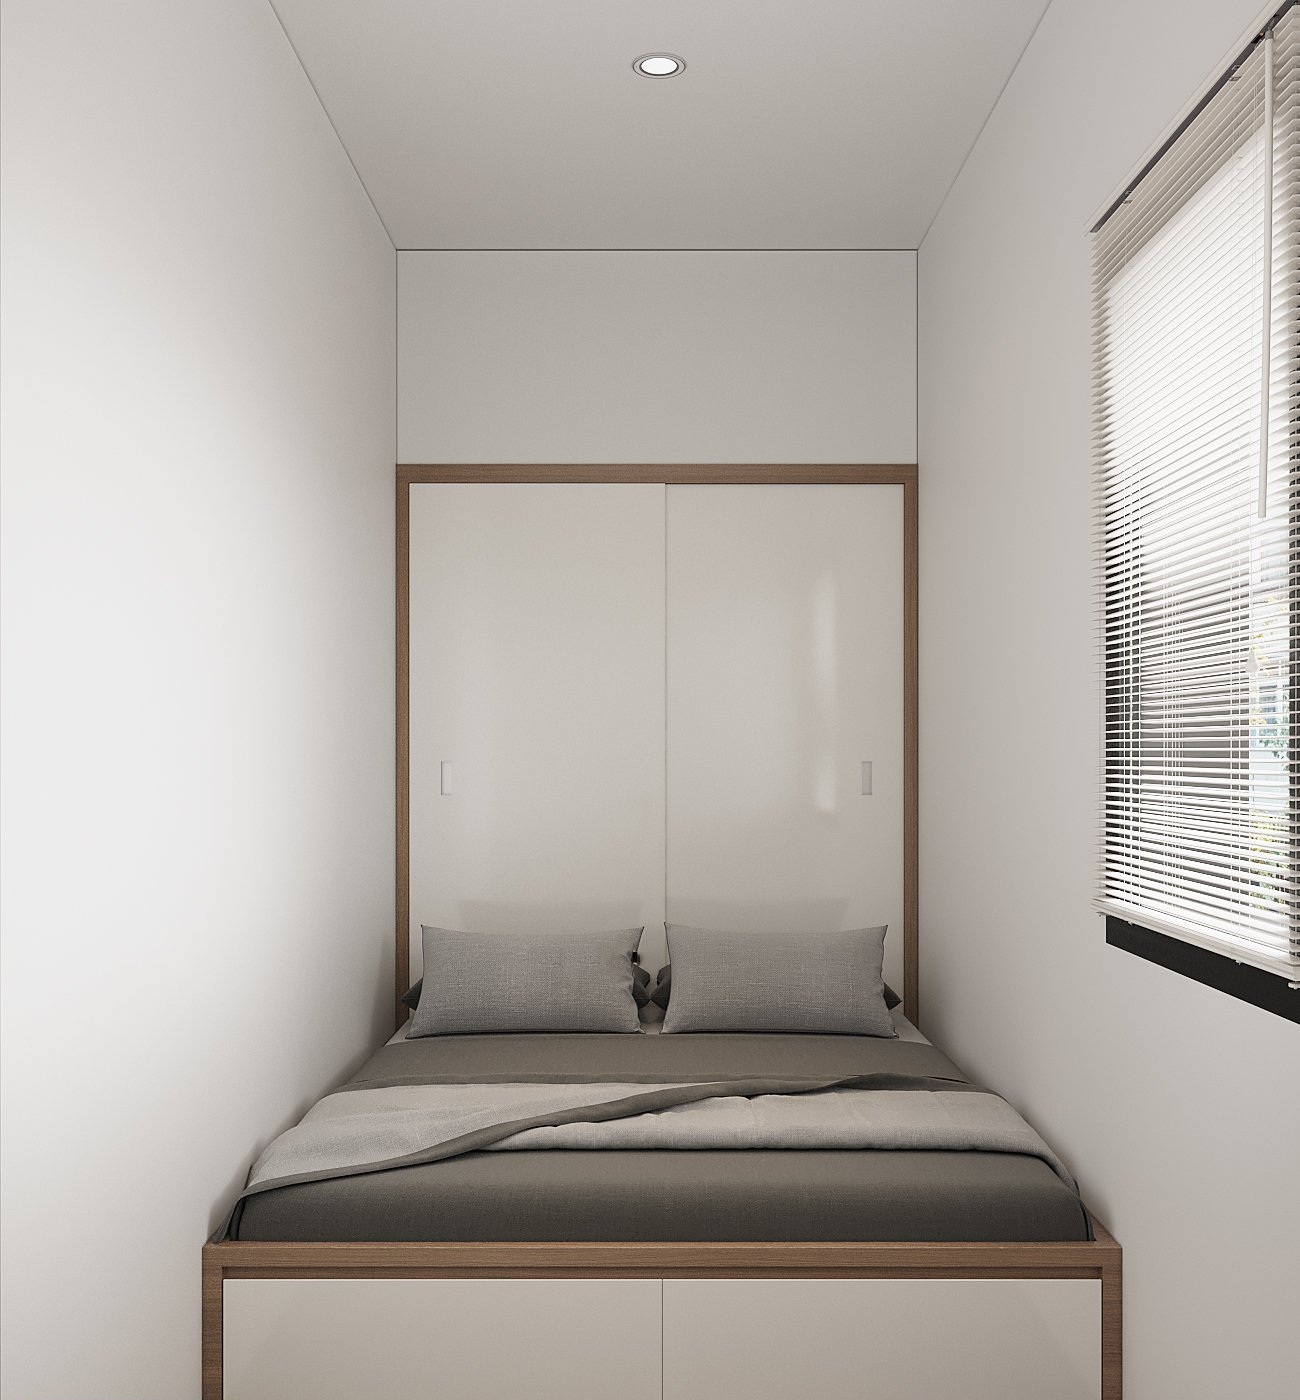 Phòng ngủ cho giúp việc với diện tích vừa đủ để bố trí các tiện ích thiết yếu.